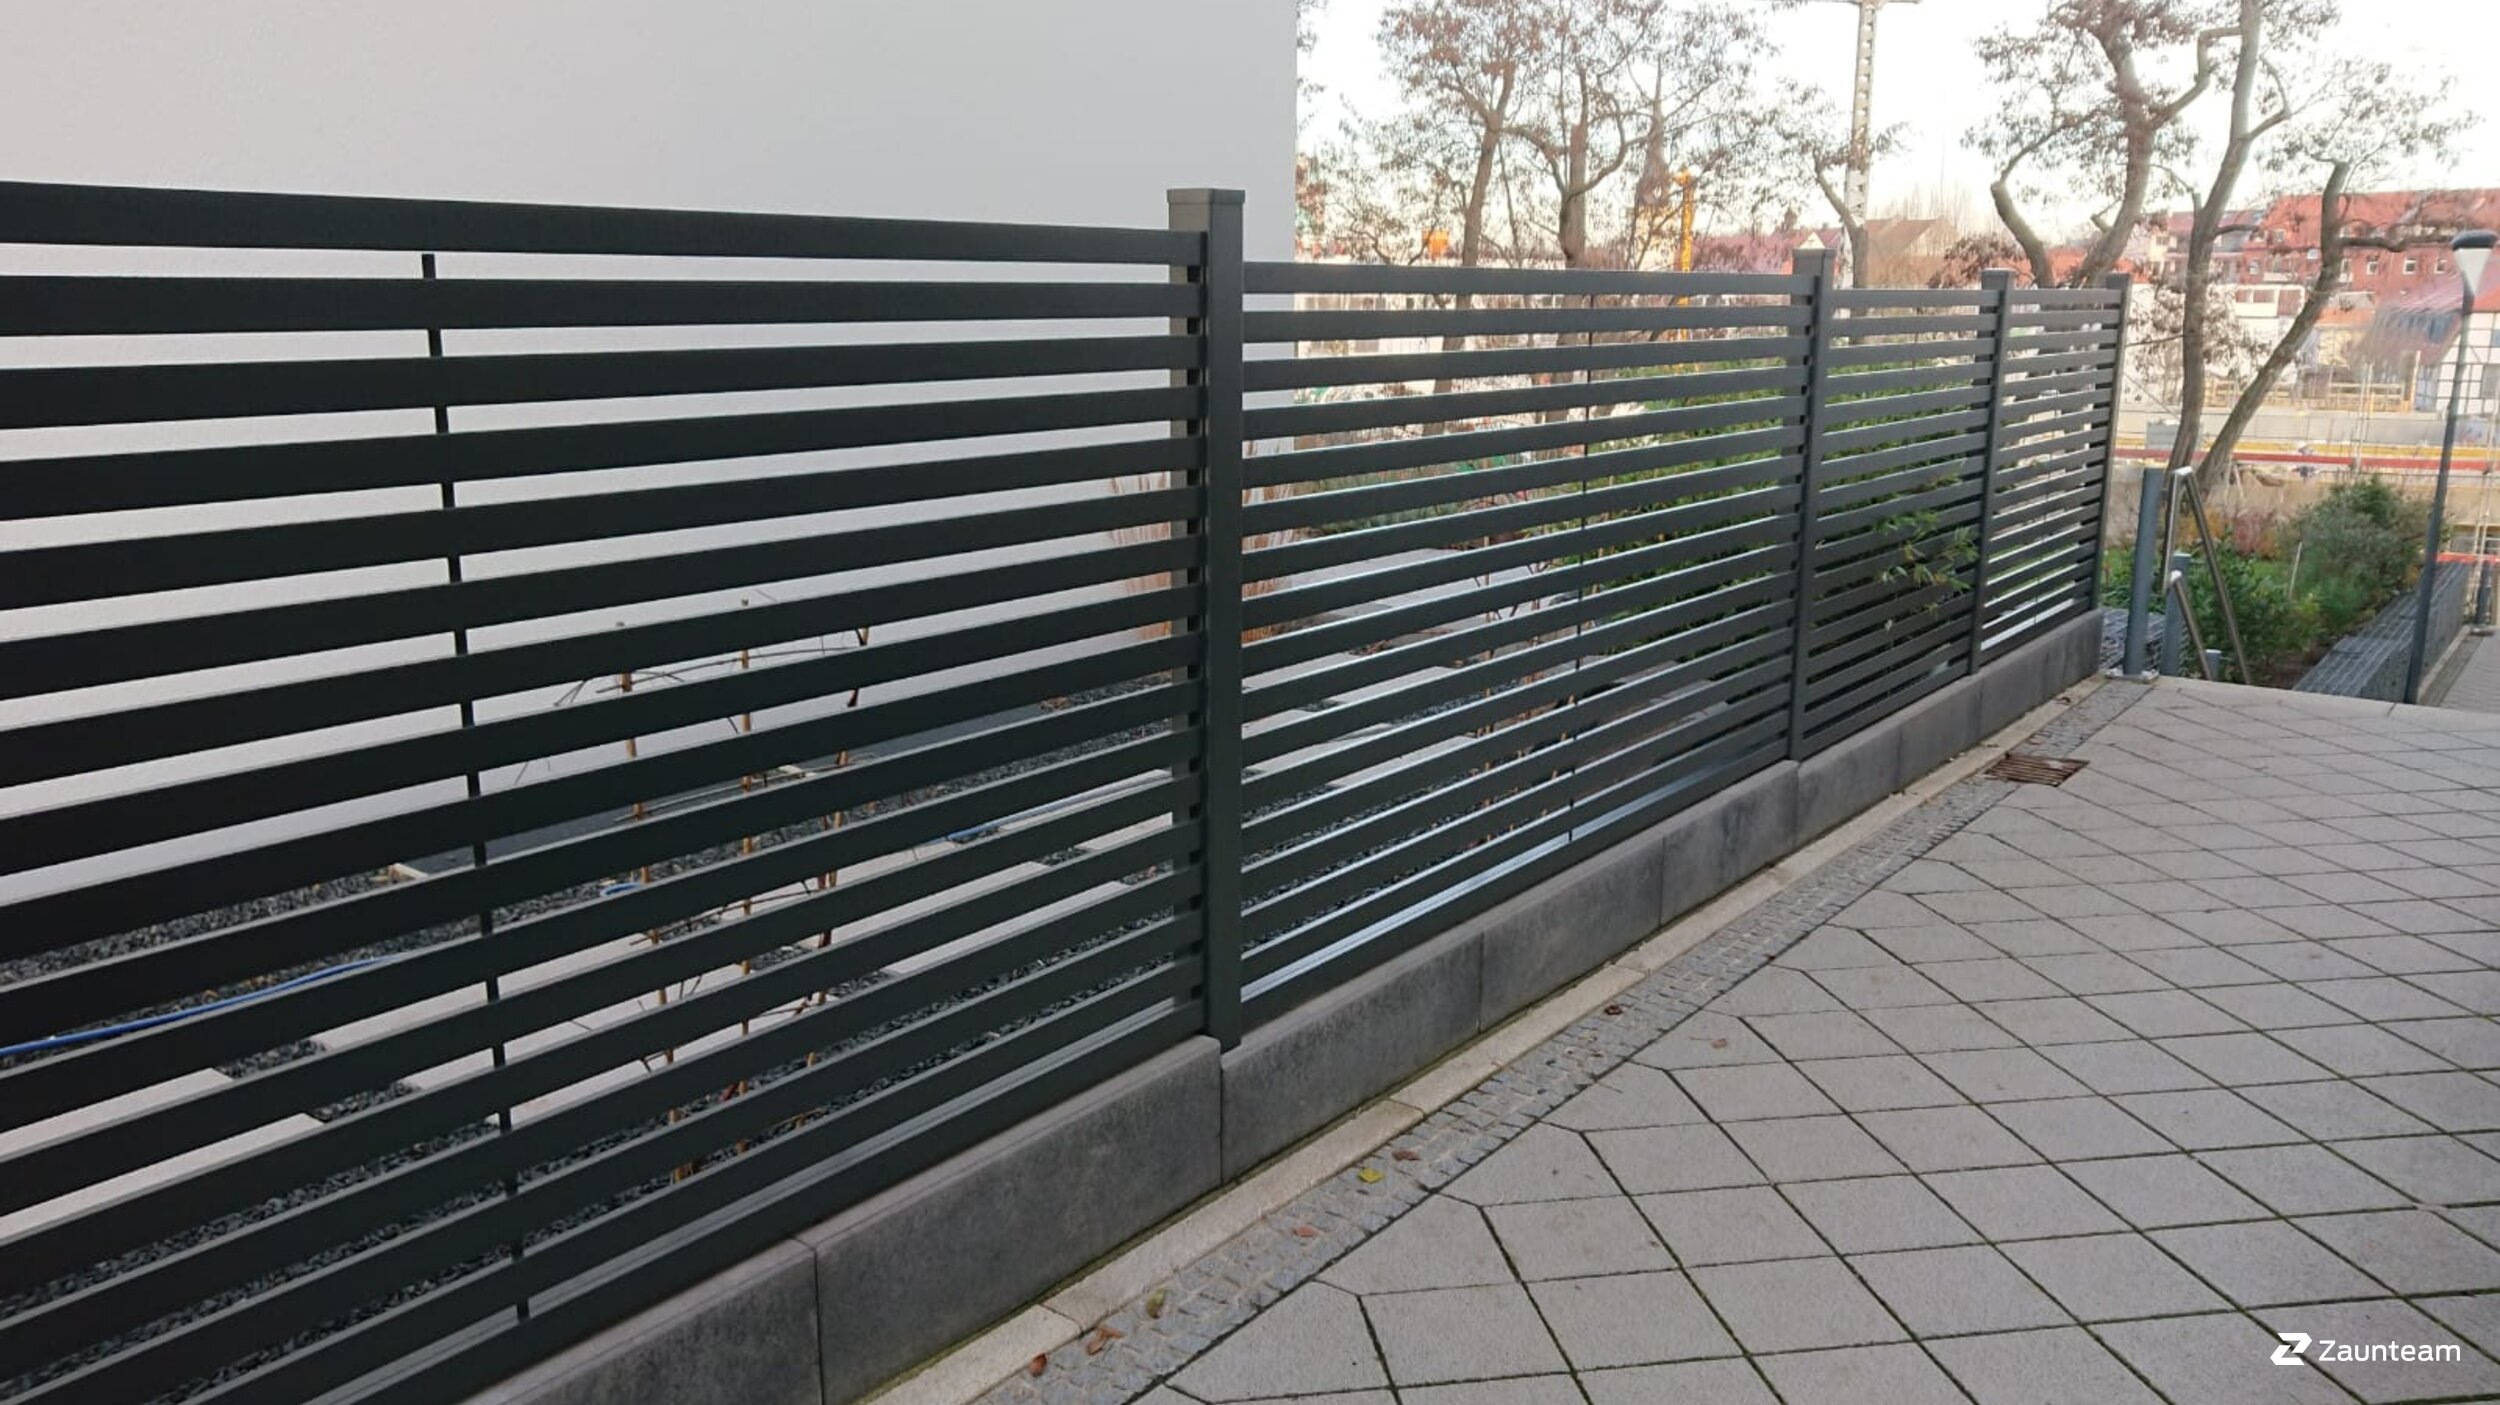 Protection brise-vue en aluminium de 2018 à 99092 Erfurt Allemagne de Zaunteam Thüringer Wald.